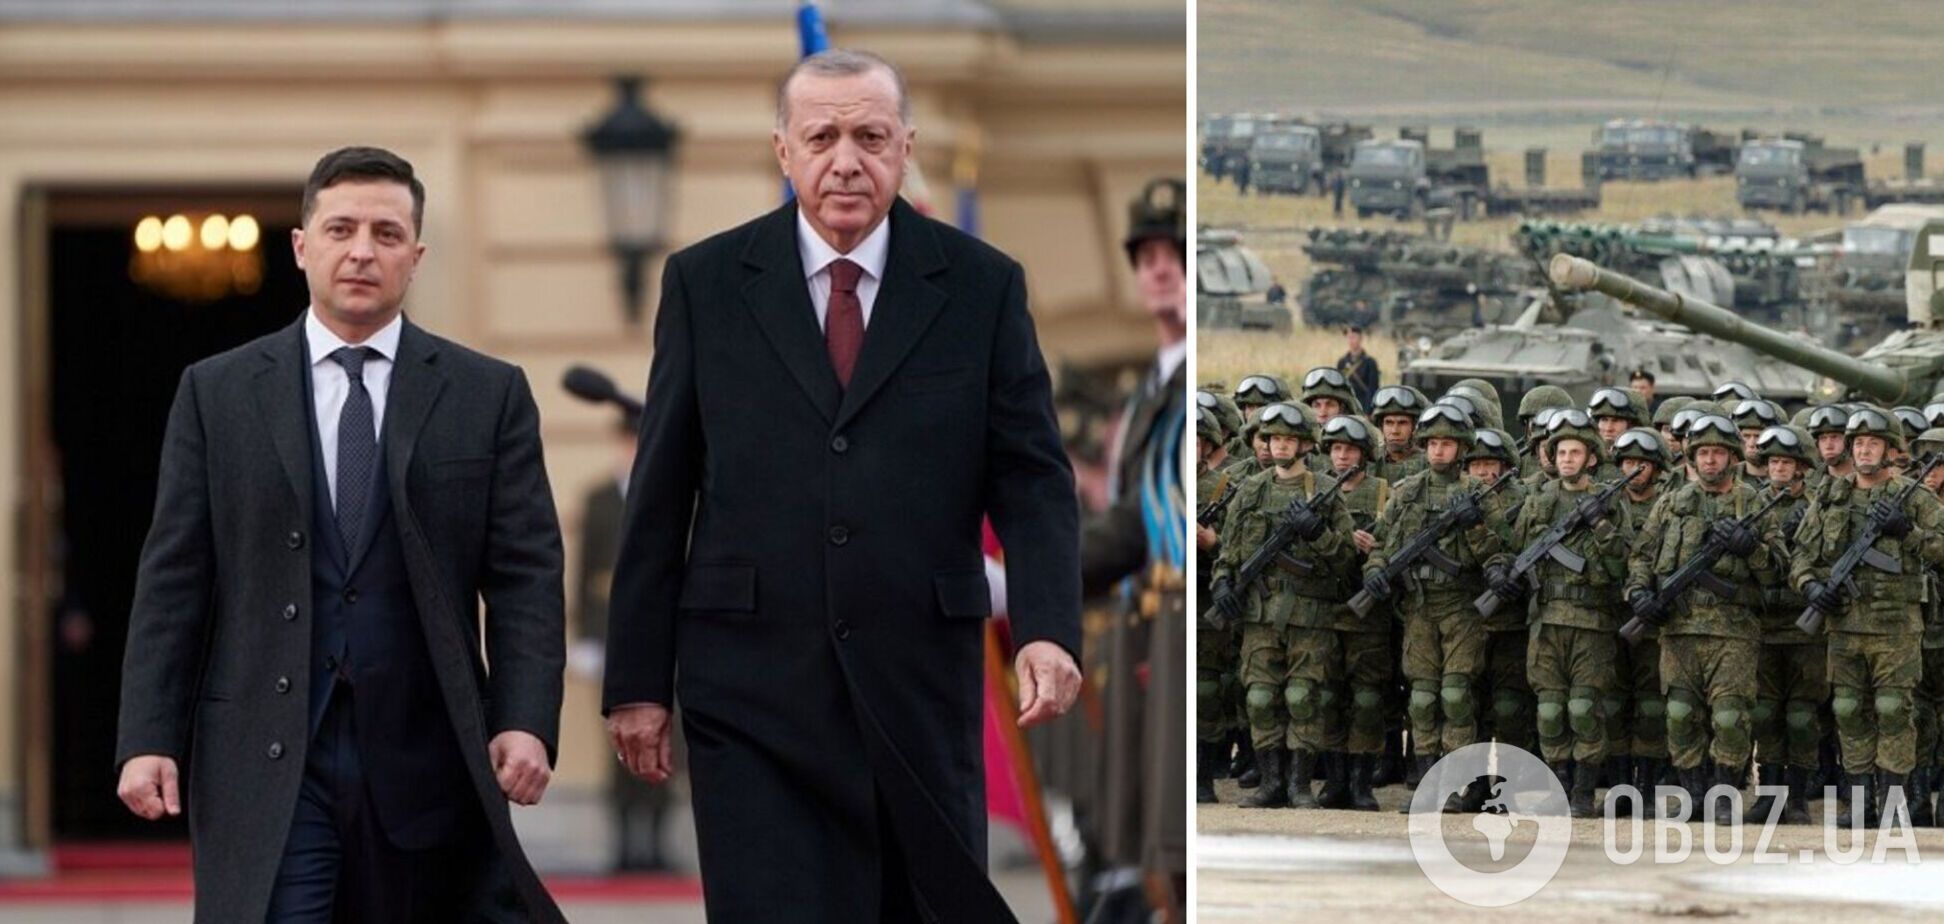 Турция готова внести свой вклад в поддержание мира, заявил Эрдоган